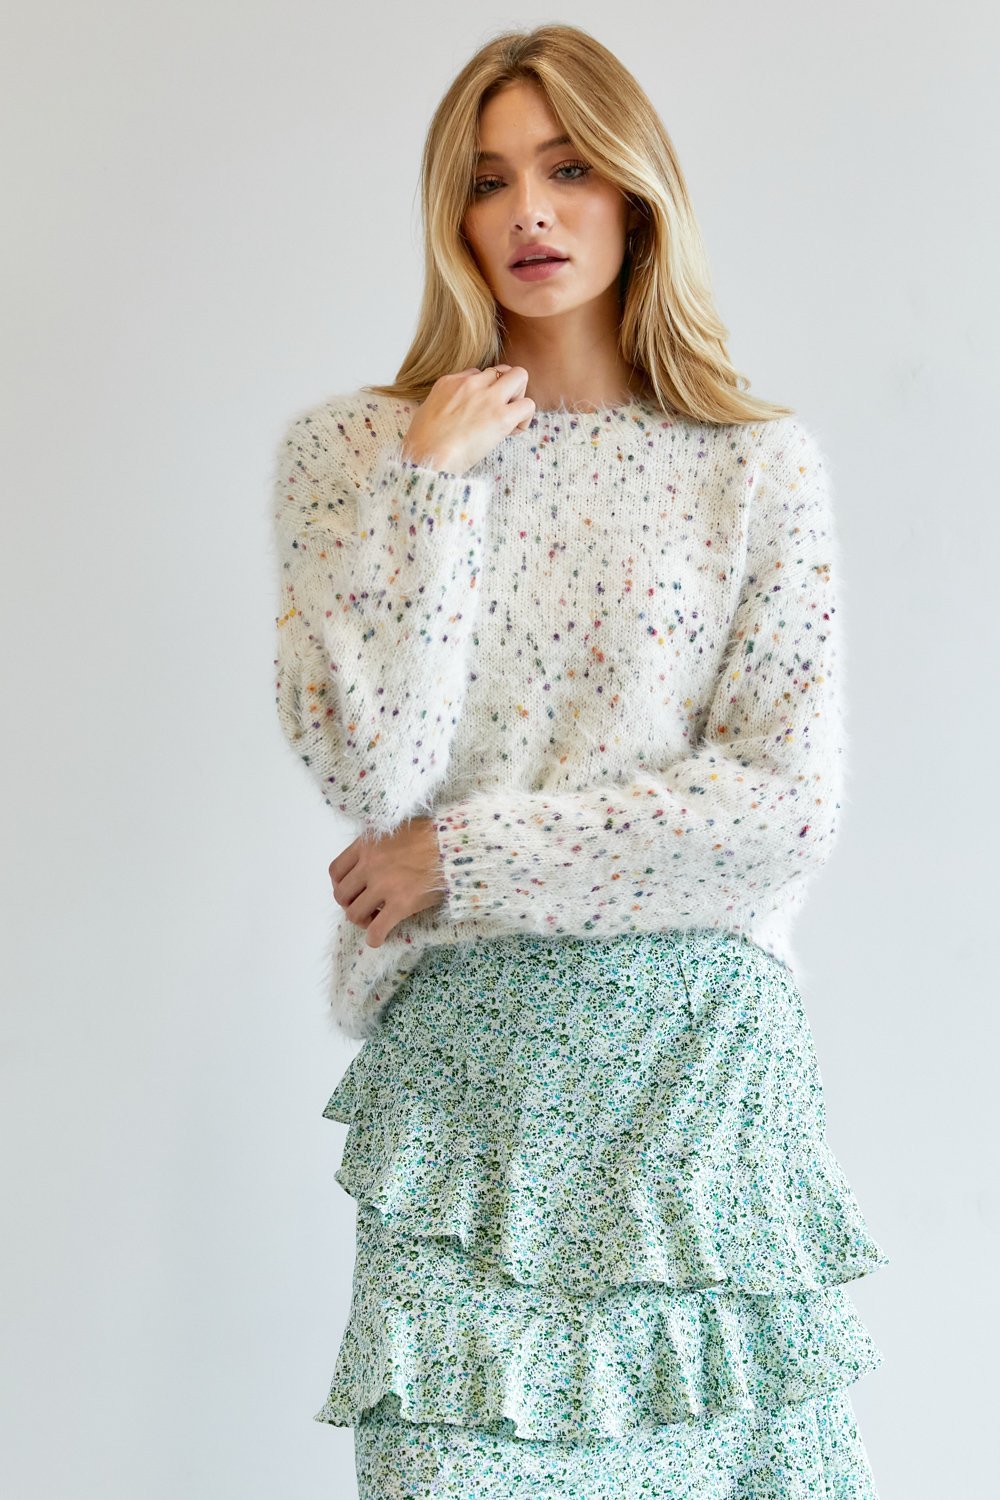 Cute Multi Color Polak Dot Sweater